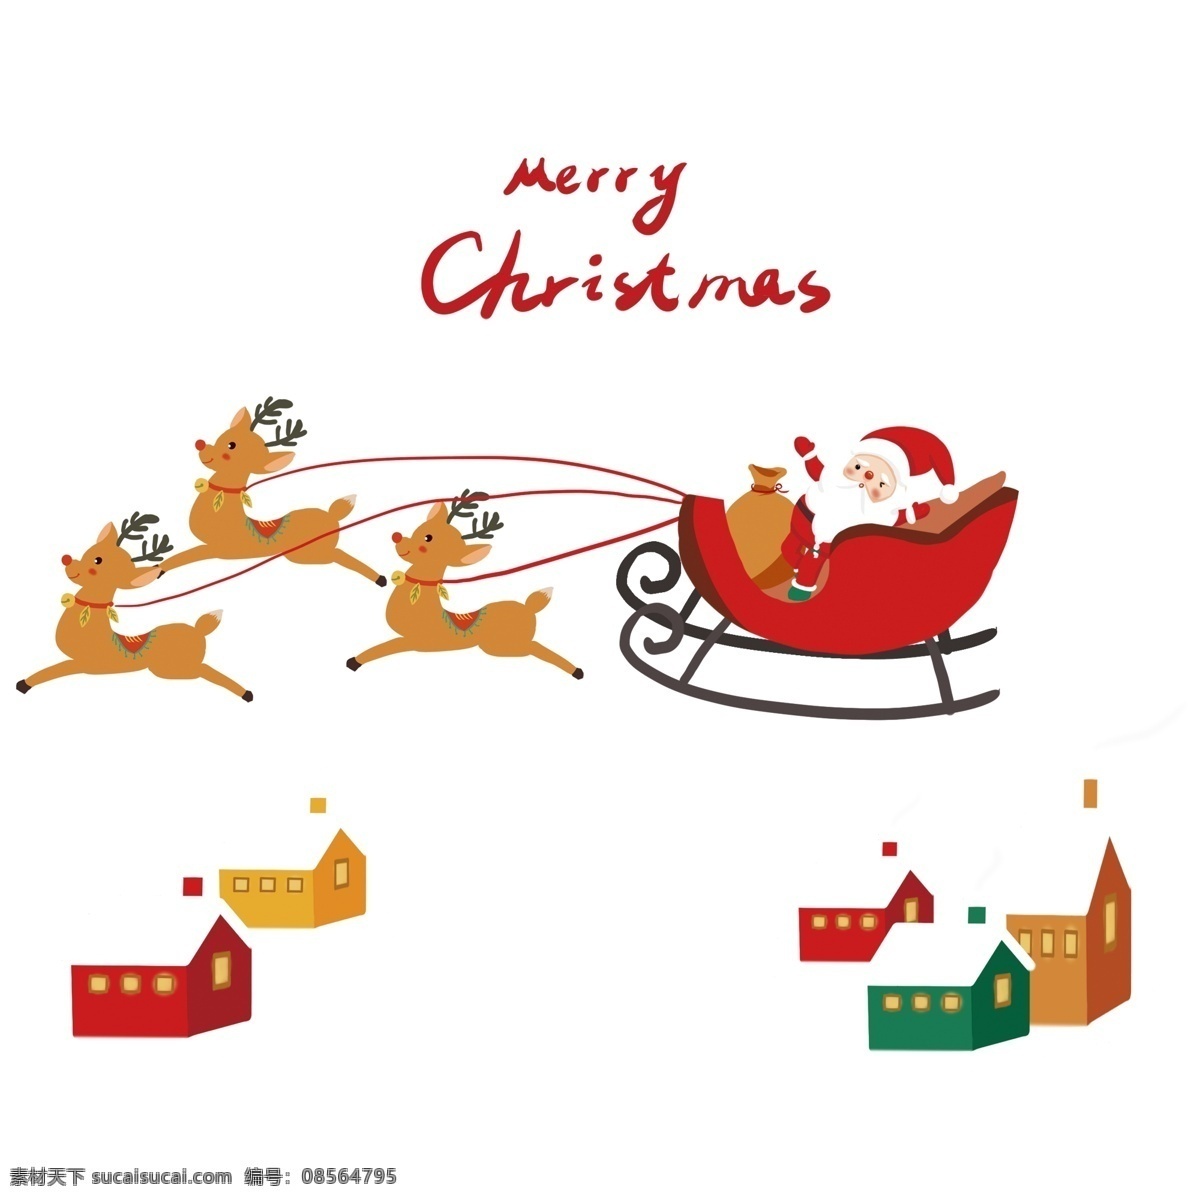 圣诞老人 飞奔 麋鹿 圣诞节 雪橇车 麋鹿们 房子 英文 旋律 绳子 大红色 卡通 手绘 开心 冬季 黄色 绿色